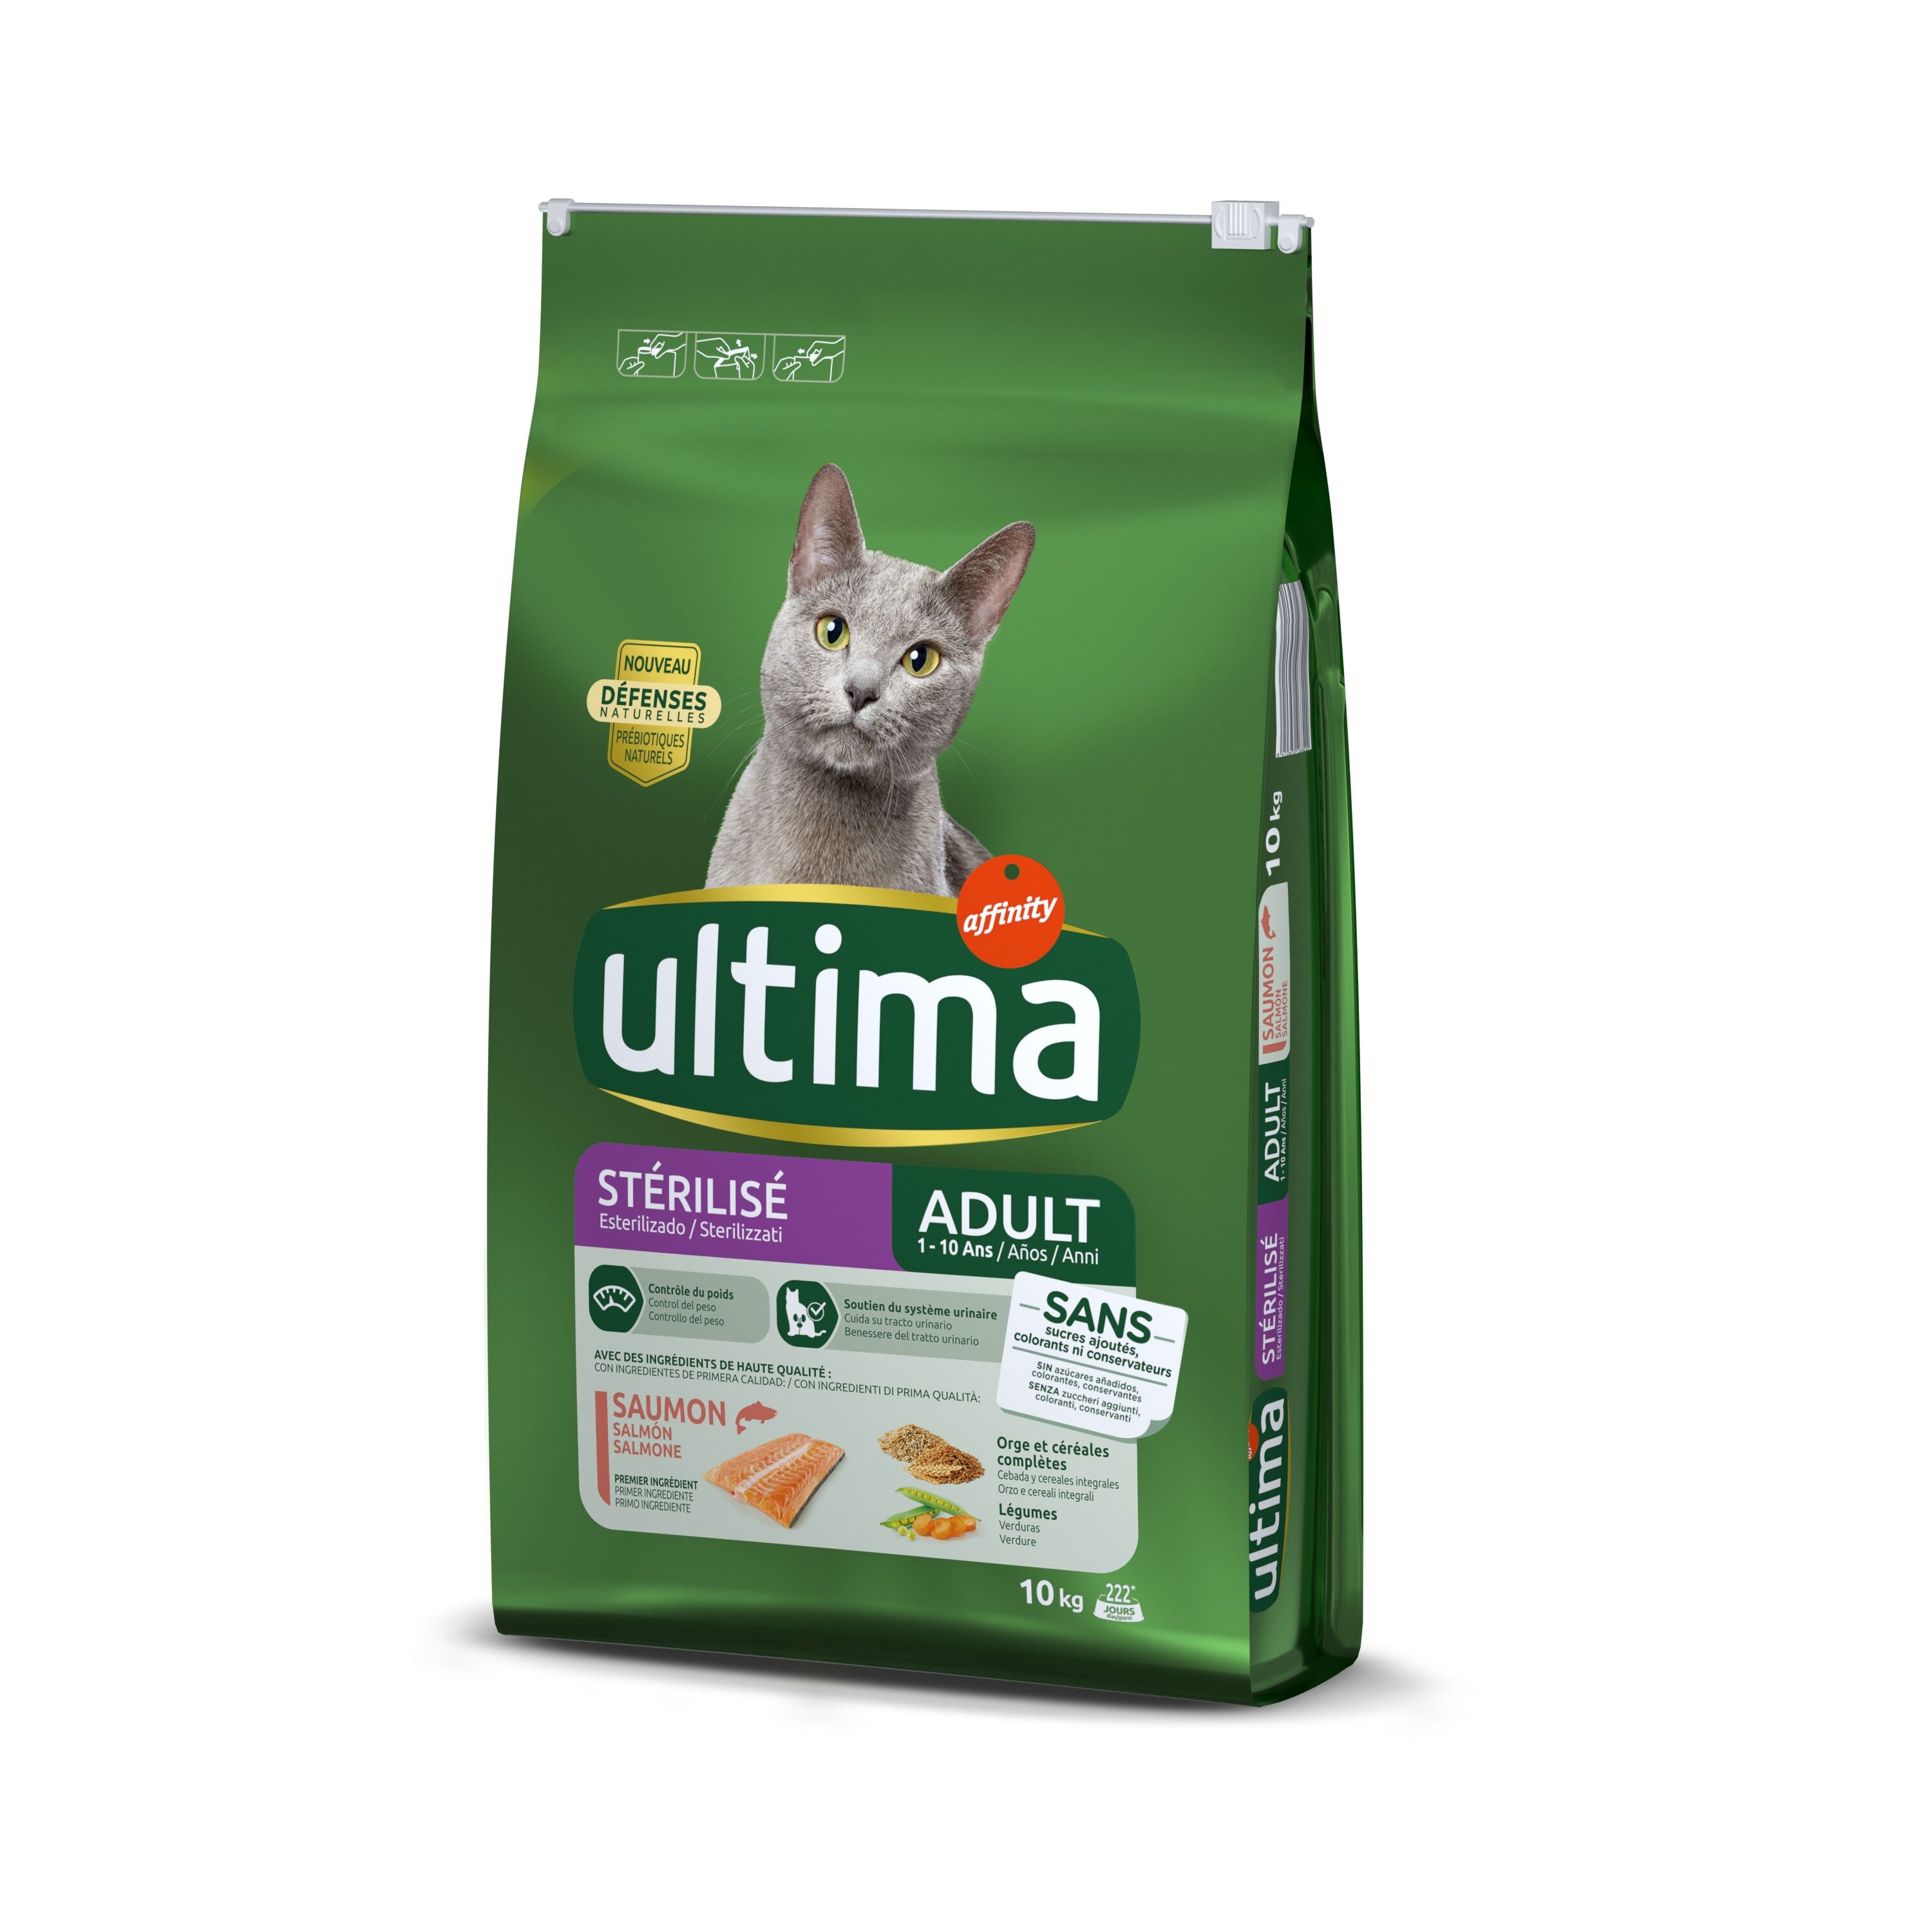 Affinity Ultima Pack ahorro: Ultima pienso para gatos - Esterilizado Adult con salmón (2 x 10 kg)